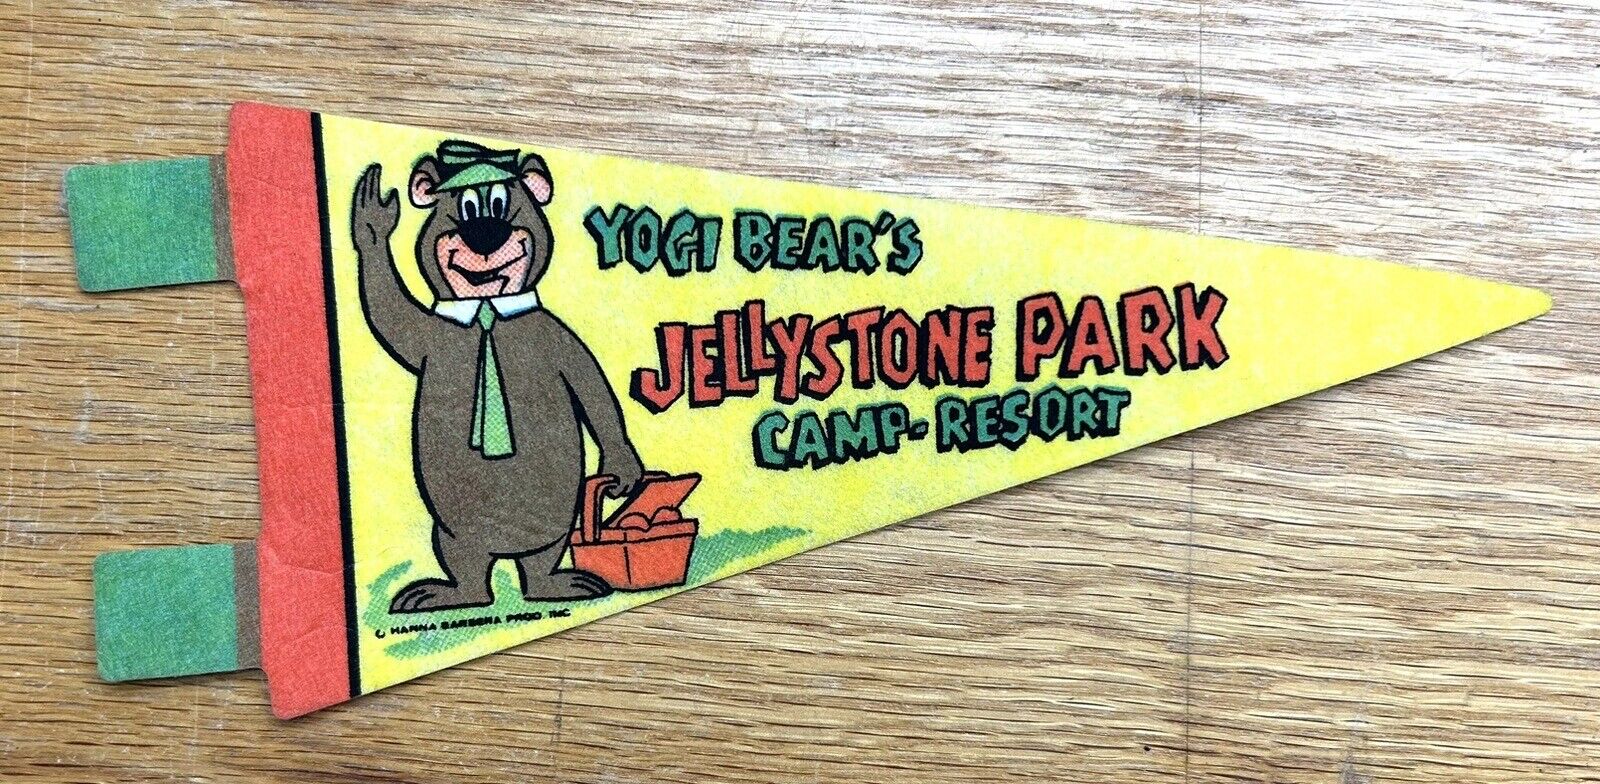 Yogi Bear’s Jellystone Park Camp Resort Hanna Barbera Cartoons Mini Pennant